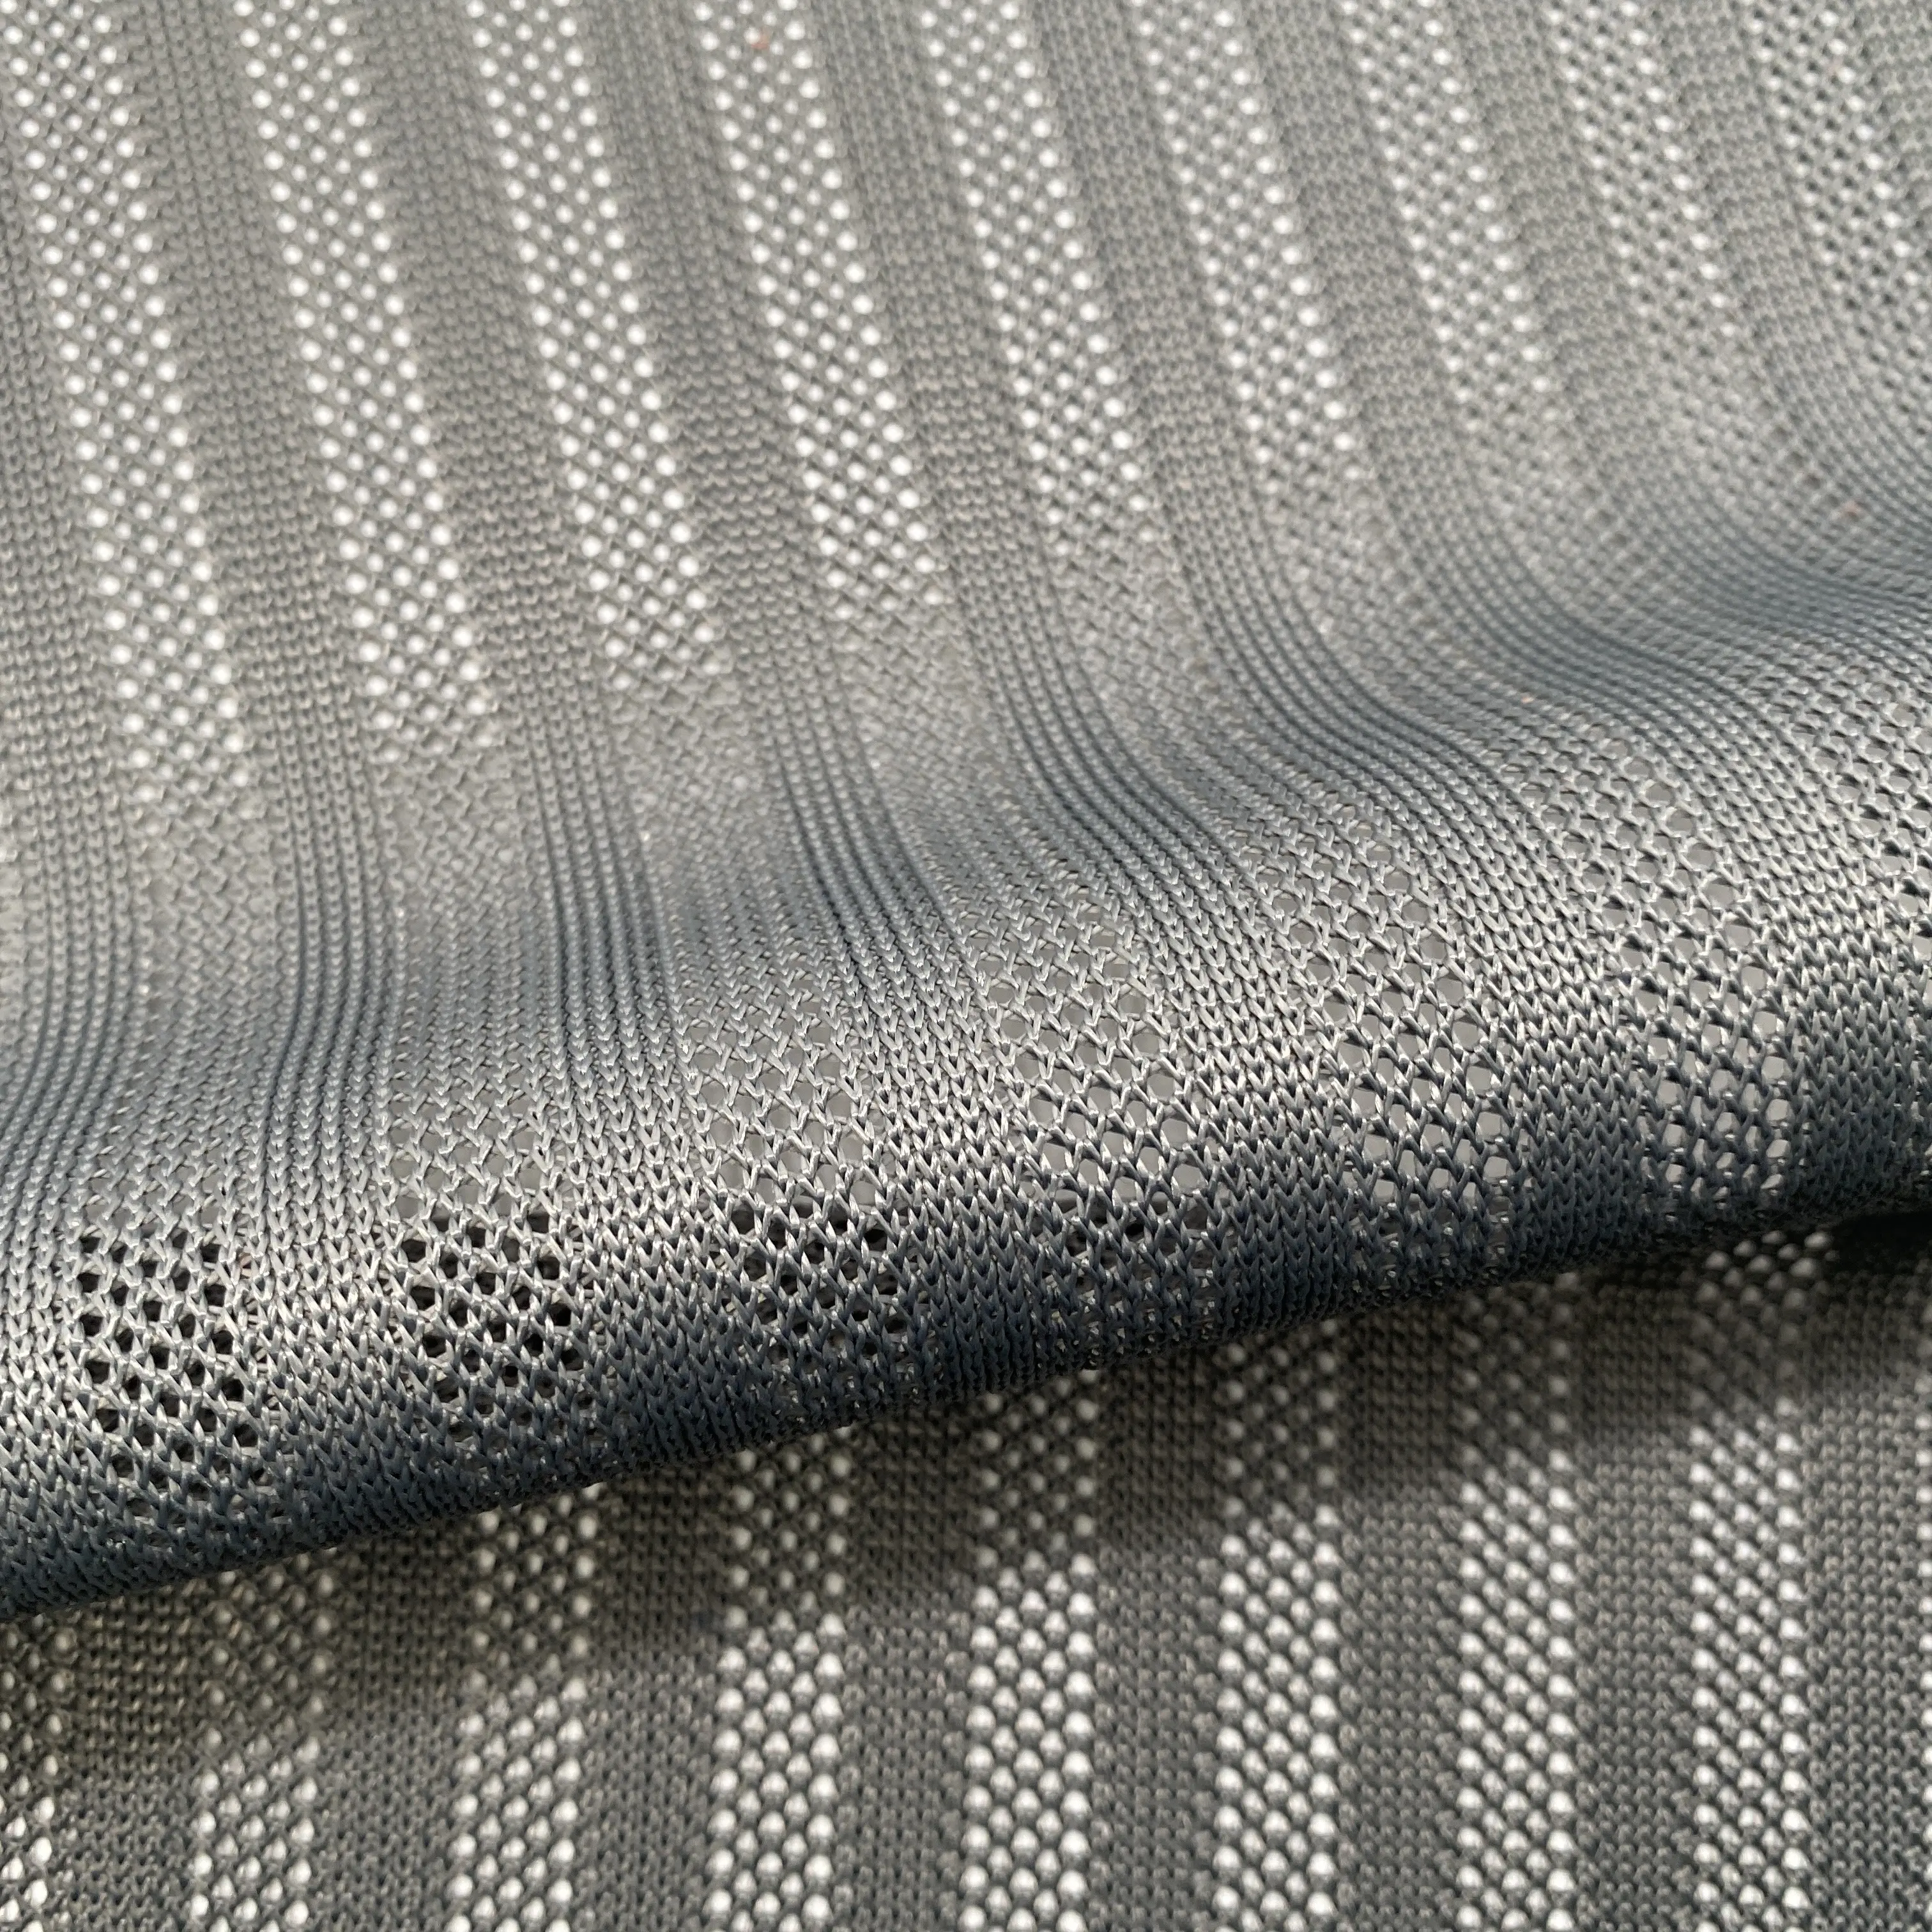 Dải Vải Lưới Polyester Raschel Dệt Kim 100% Cho Ghế Văn Phòng, Giá Đỡ, Đồ Nội Thất Ngoài Trời, Chất Liệu Lưng